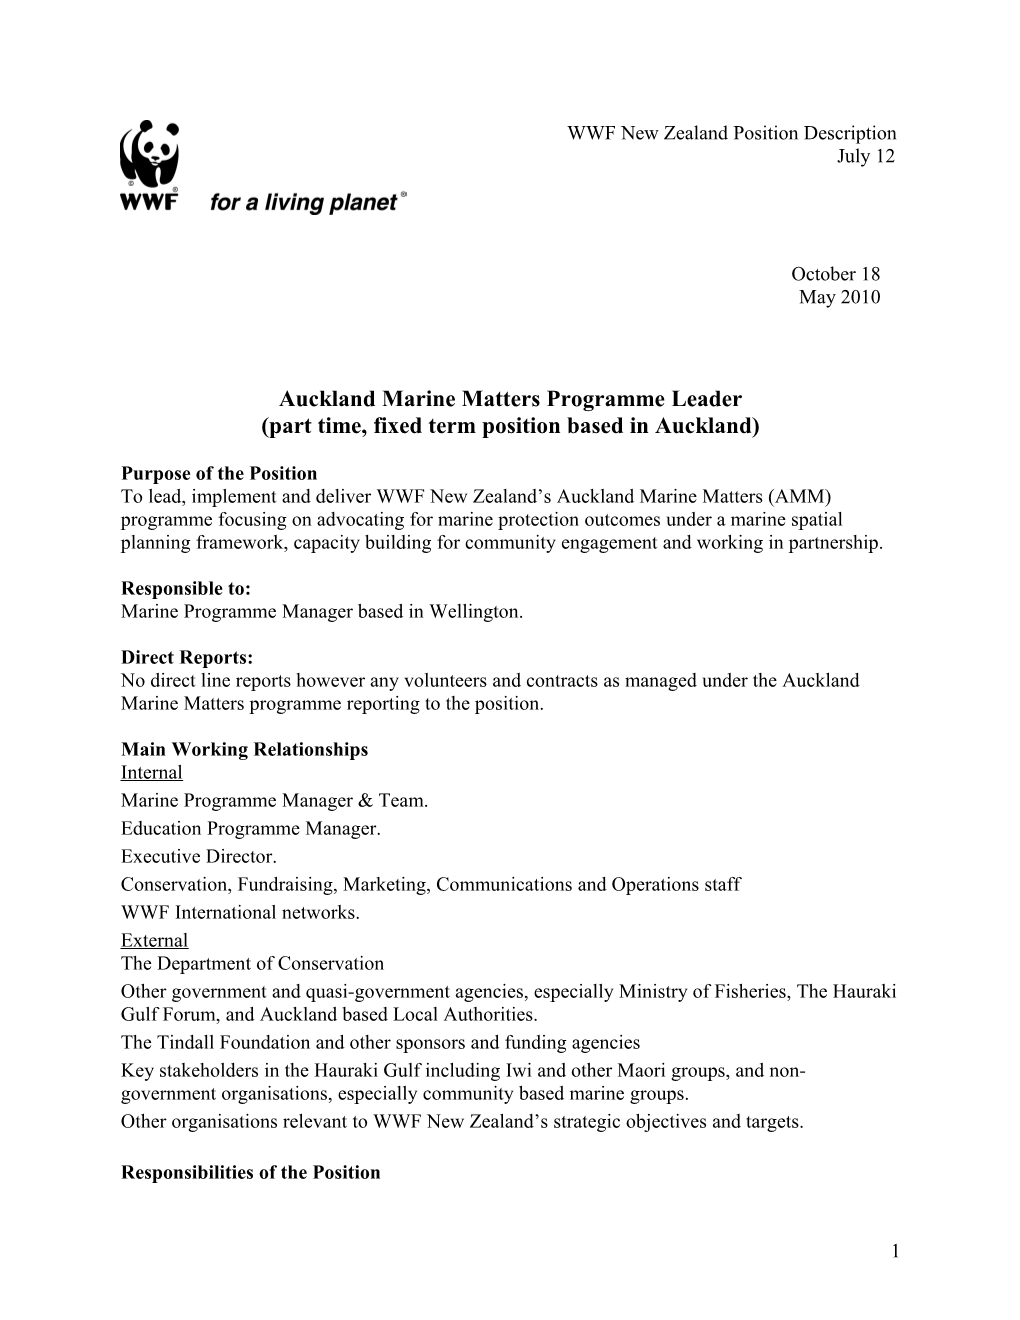 WWF New Zealand: Position Description